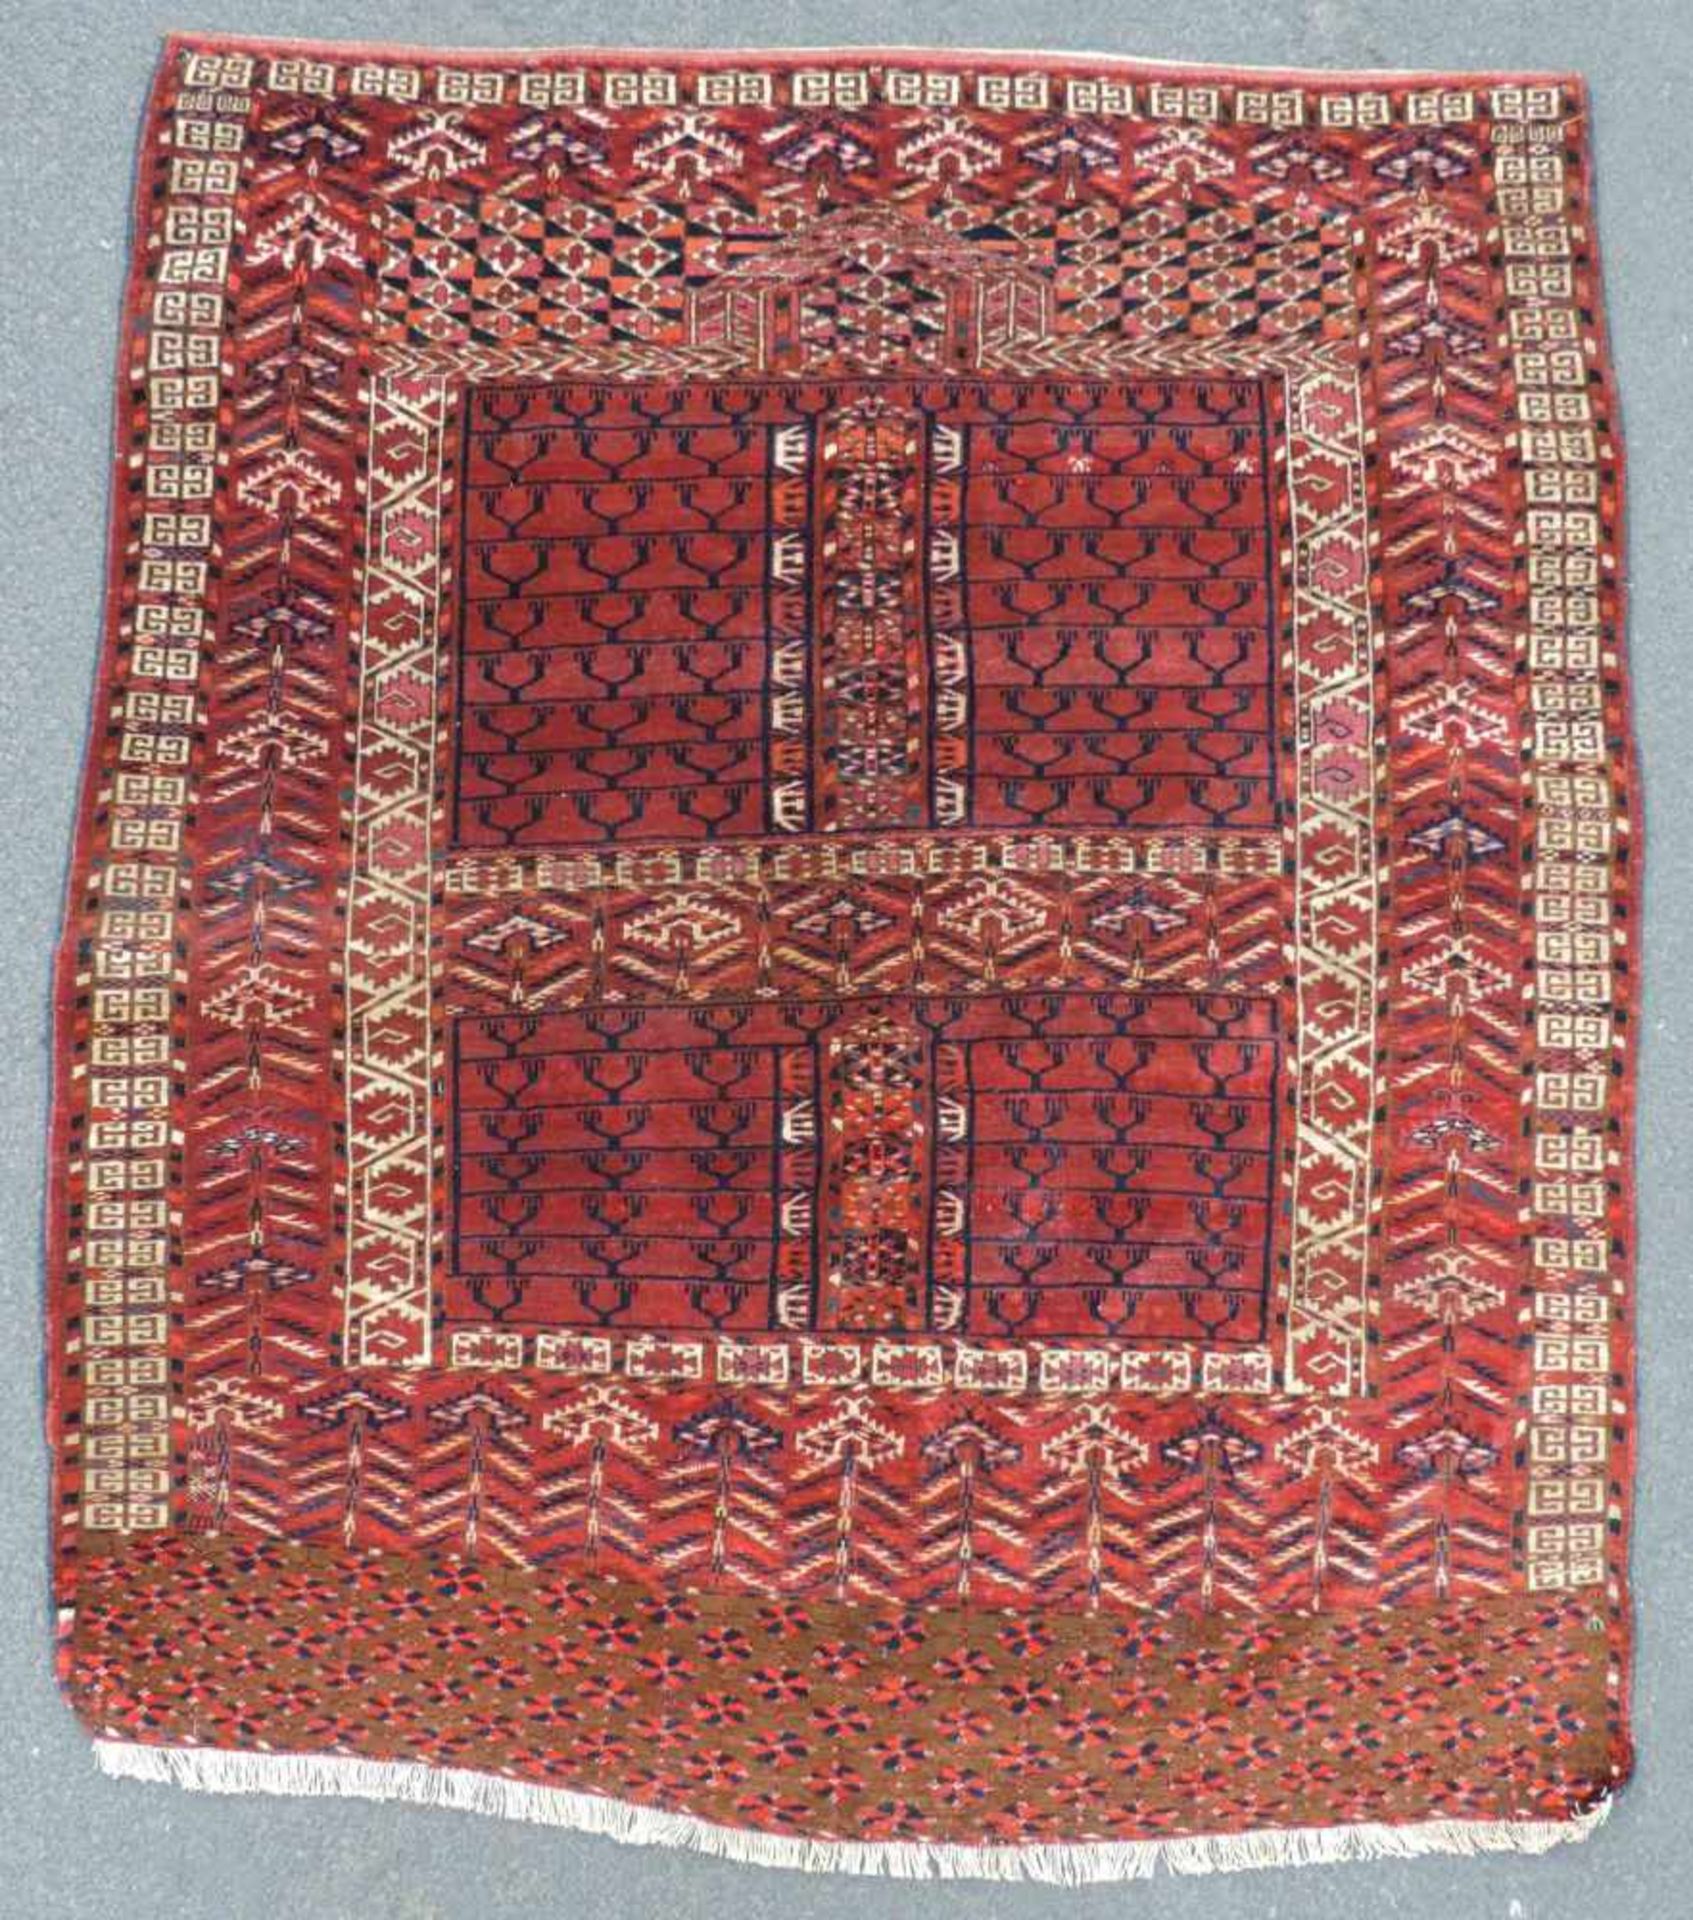 Tekke Ensi Stammesteppich. Turkmenistan. Antik, um 1900.148 cm x 125 cm. Handgeknüpft. Wolle auf